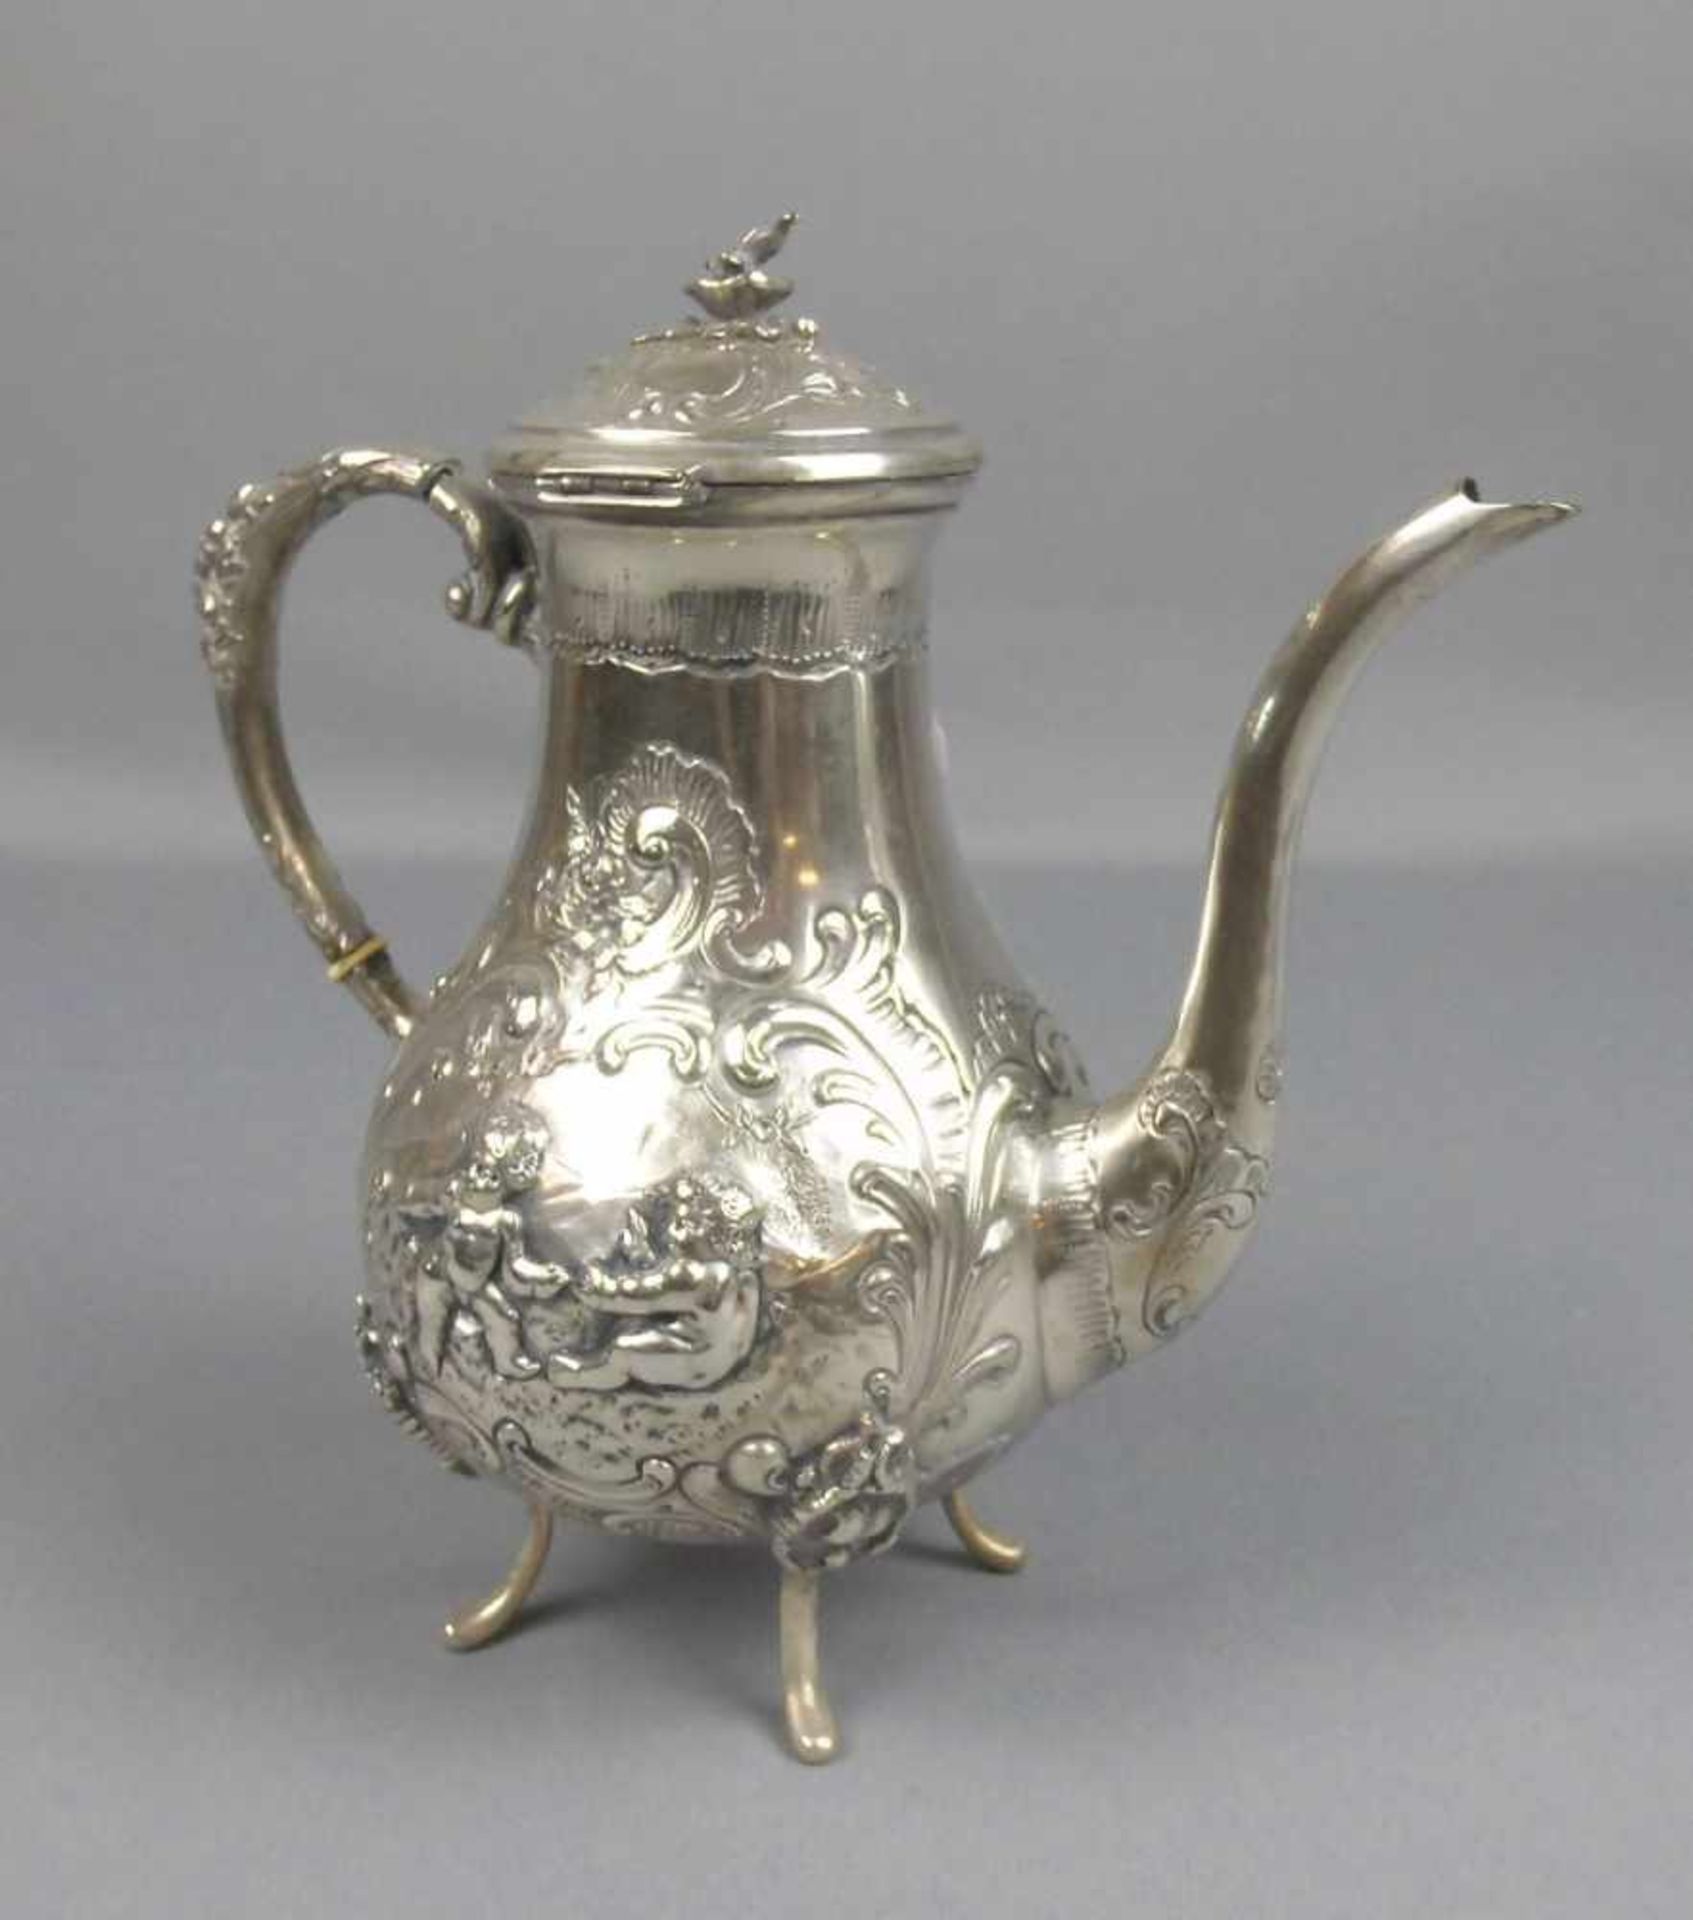 KAFFEEKANNE / silver coffee pot, wohl 19. Jh., 800er Silber (813 g), gepunzt mit Feingehaltsangabe - Bild 4 aus 7